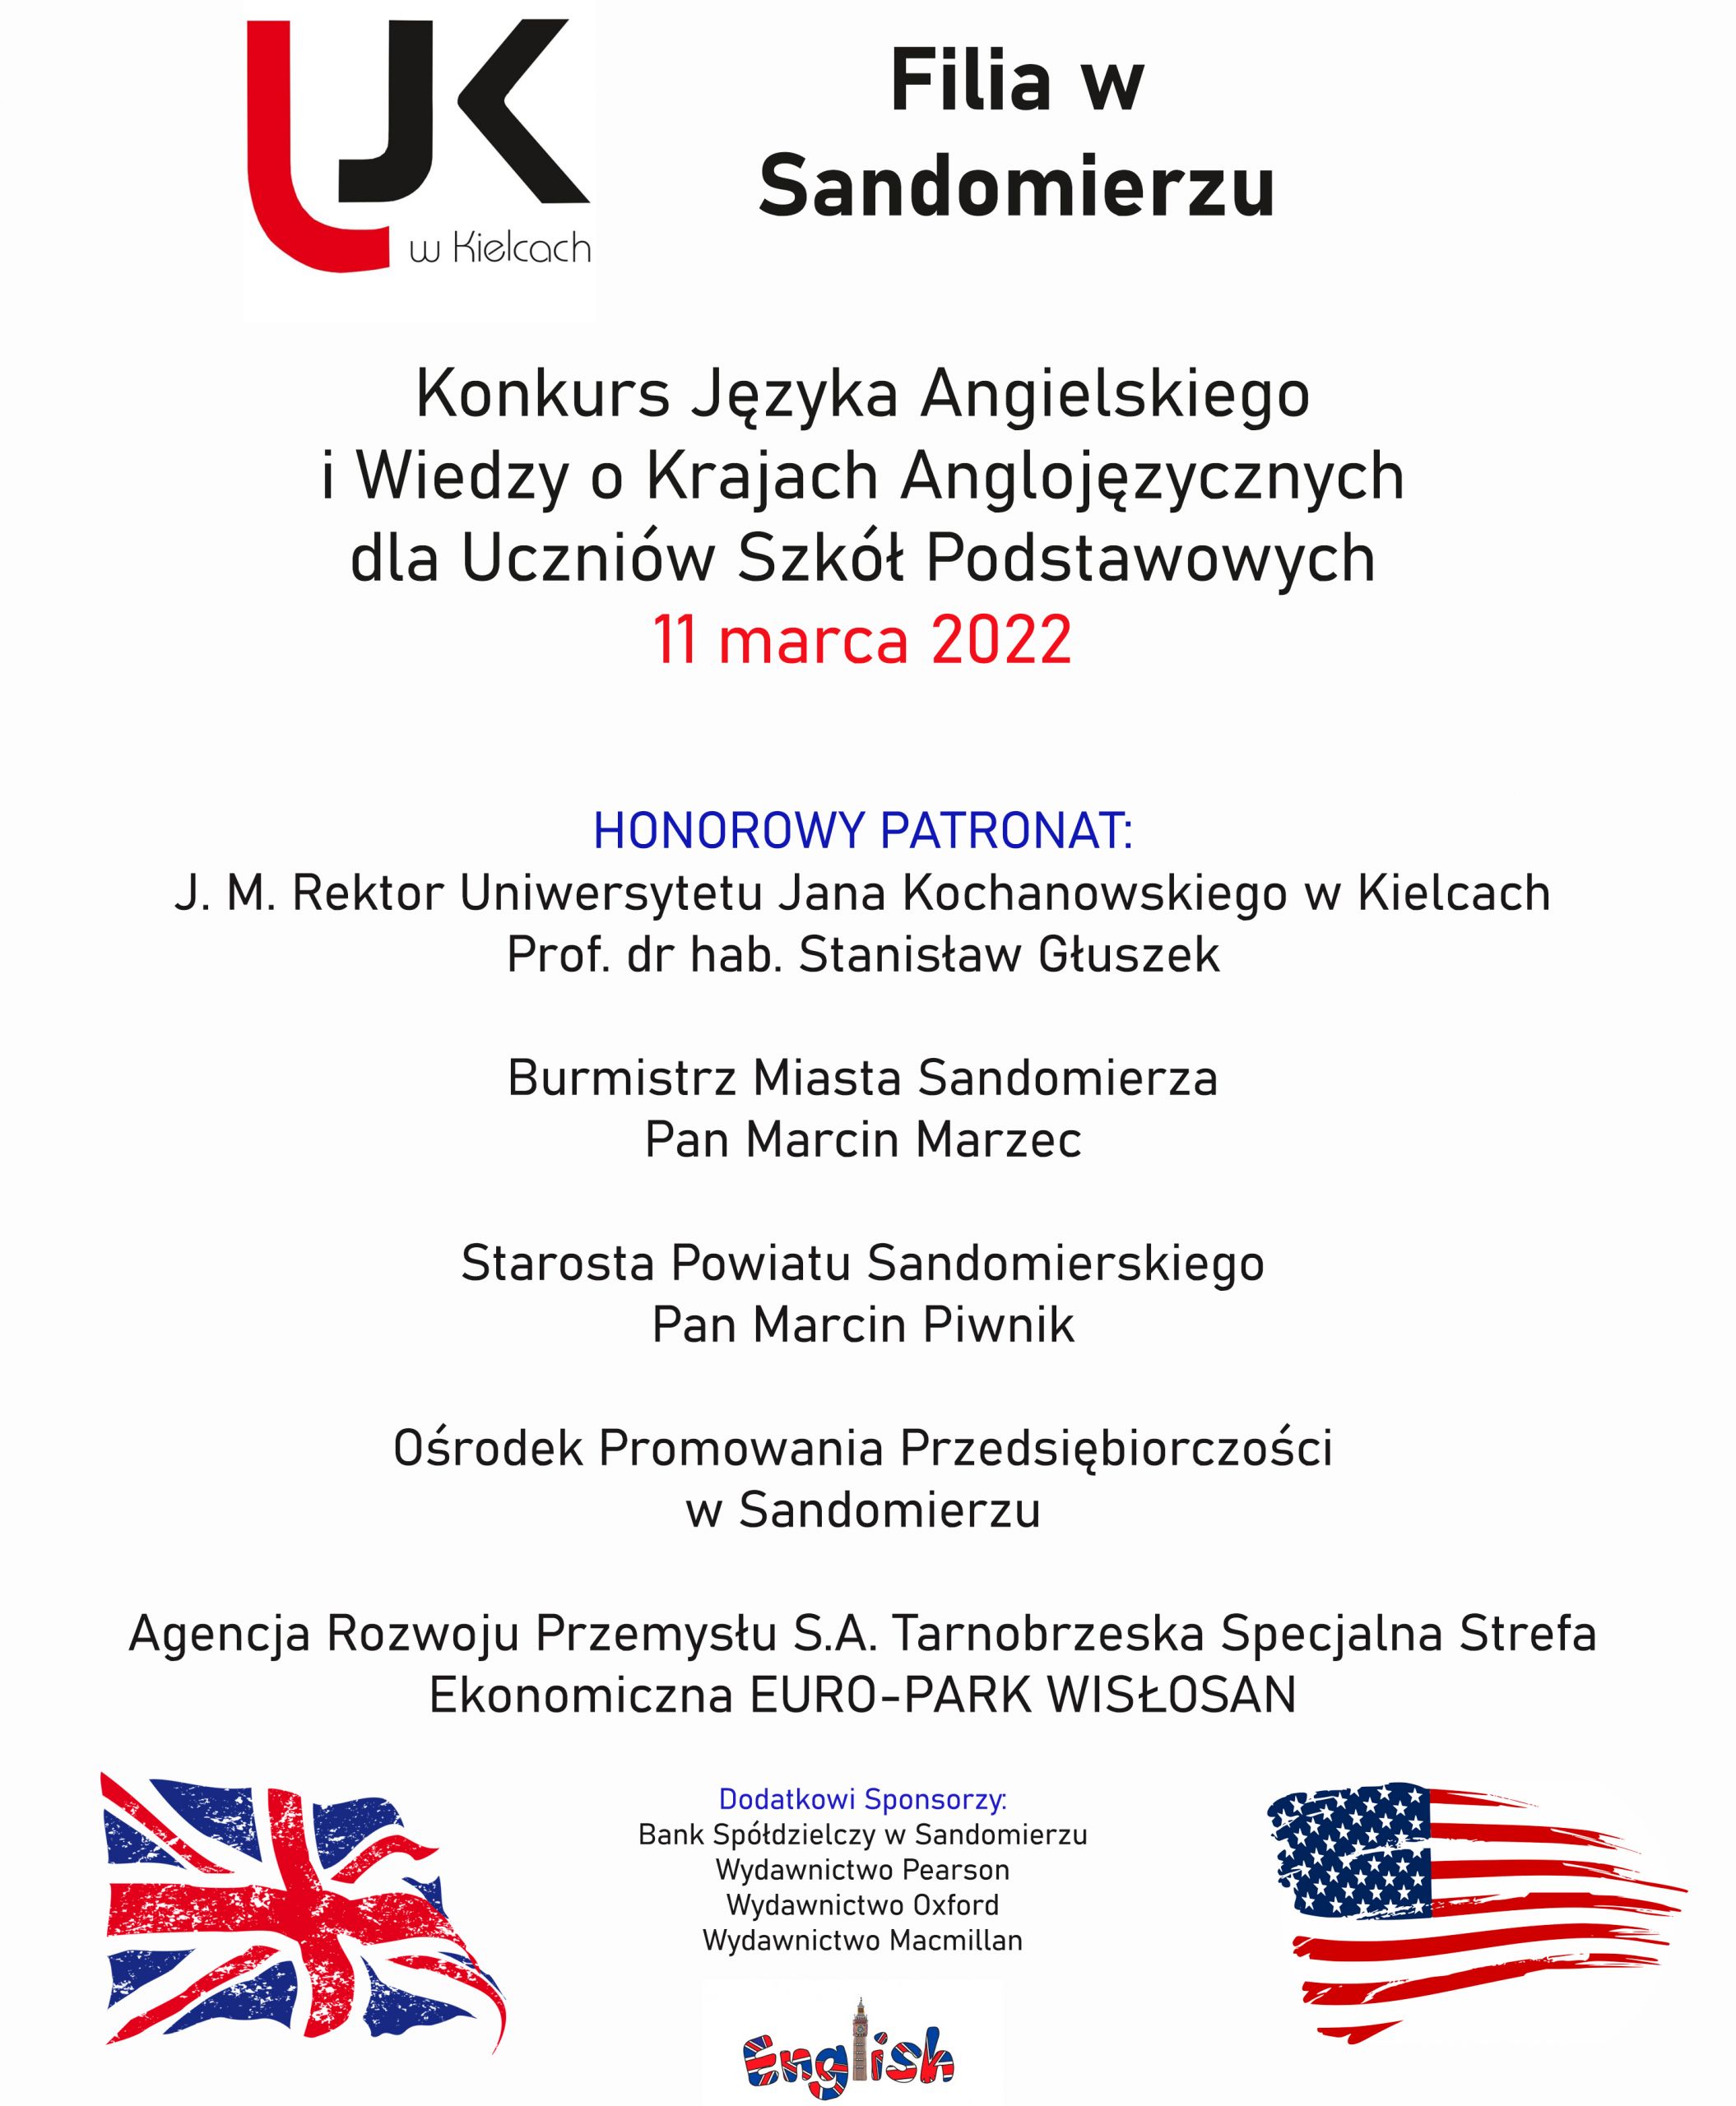 Plakat konkursu jezyka angielskiego dwie flagi USA i wielkiej brytanii